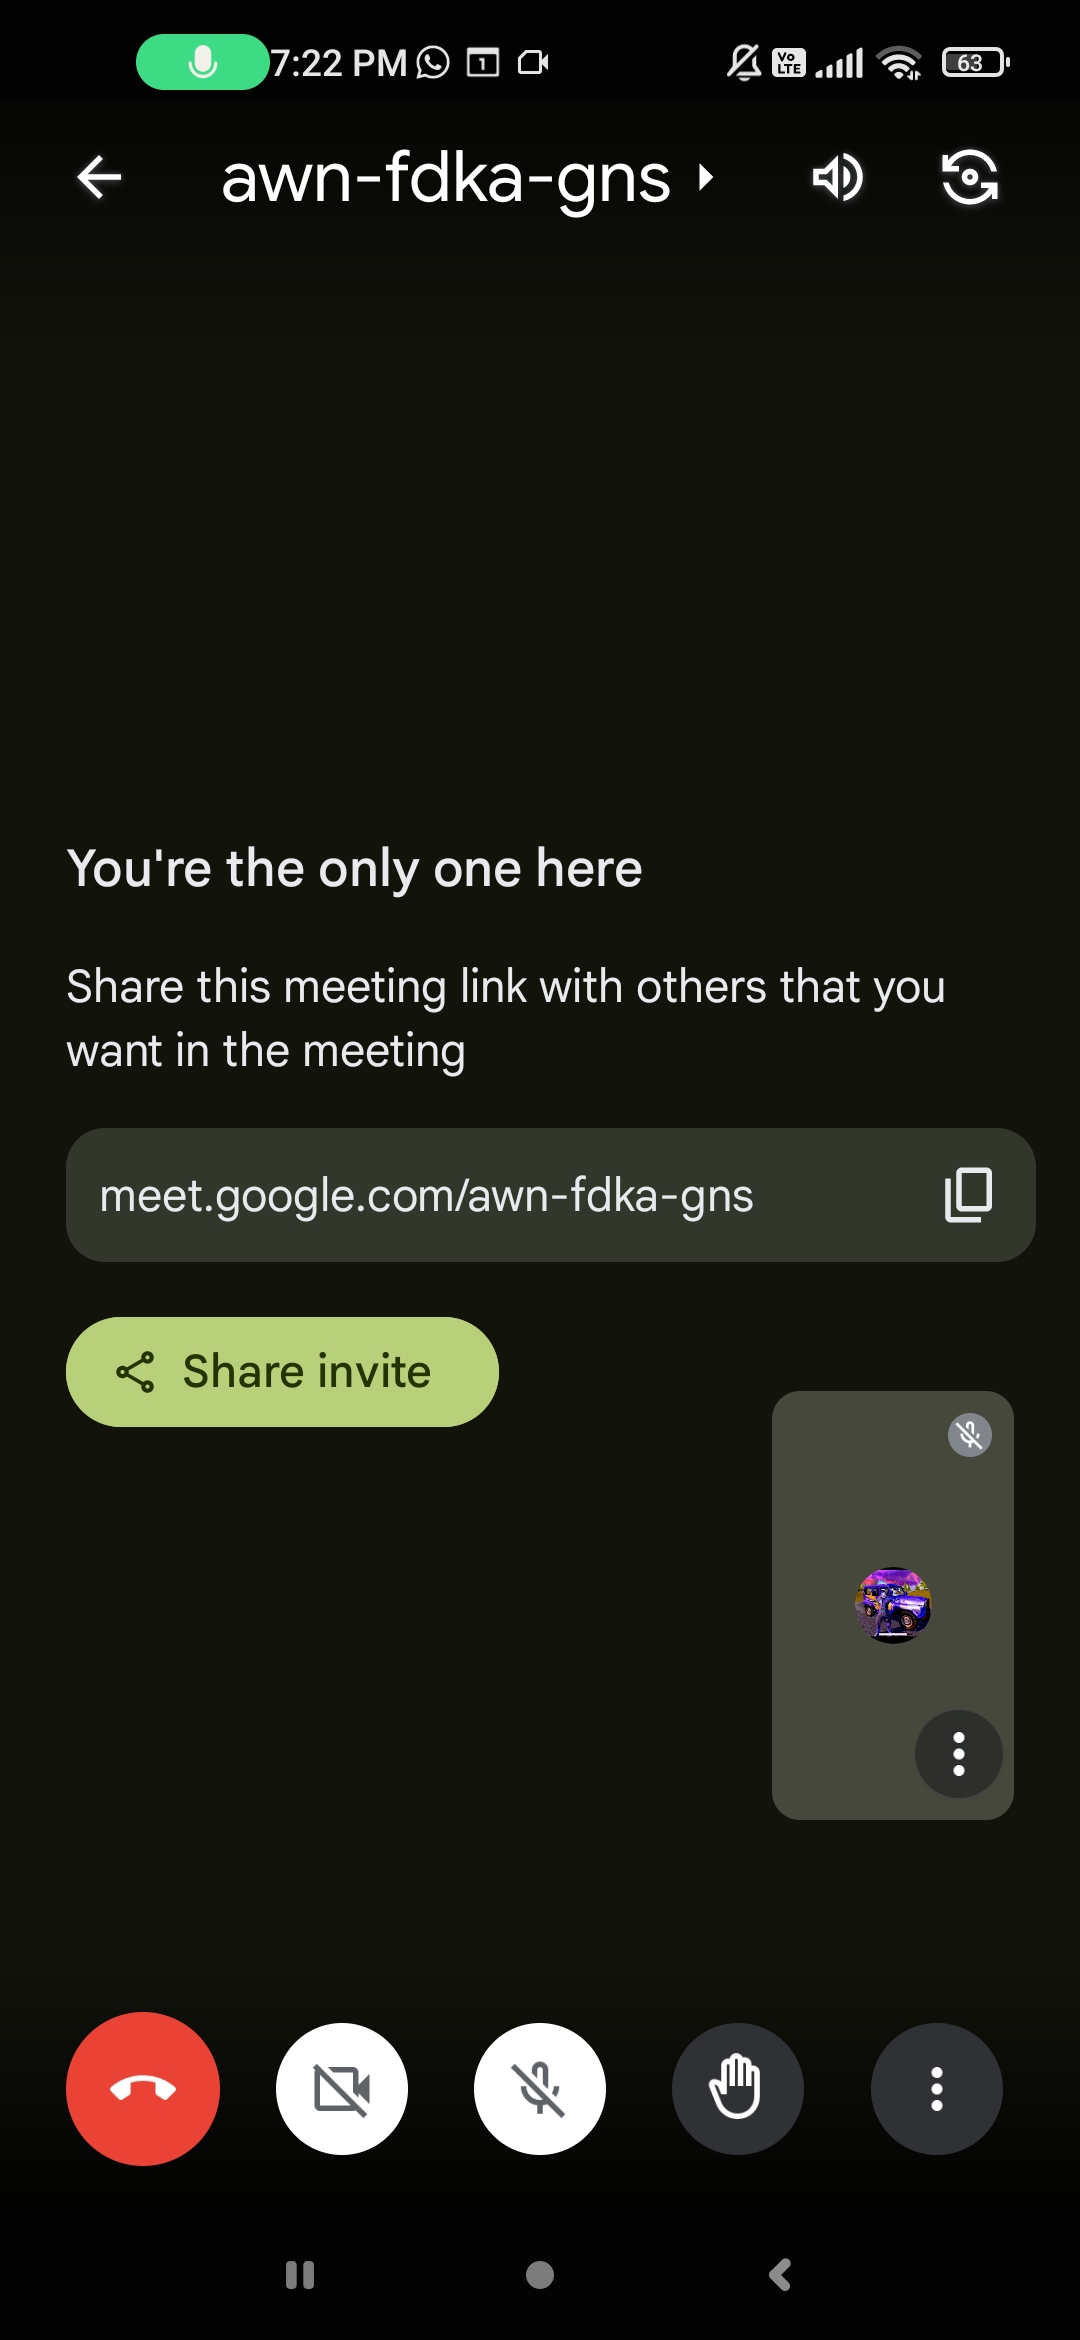 Join this meet meet (awn-fdka-gns)?